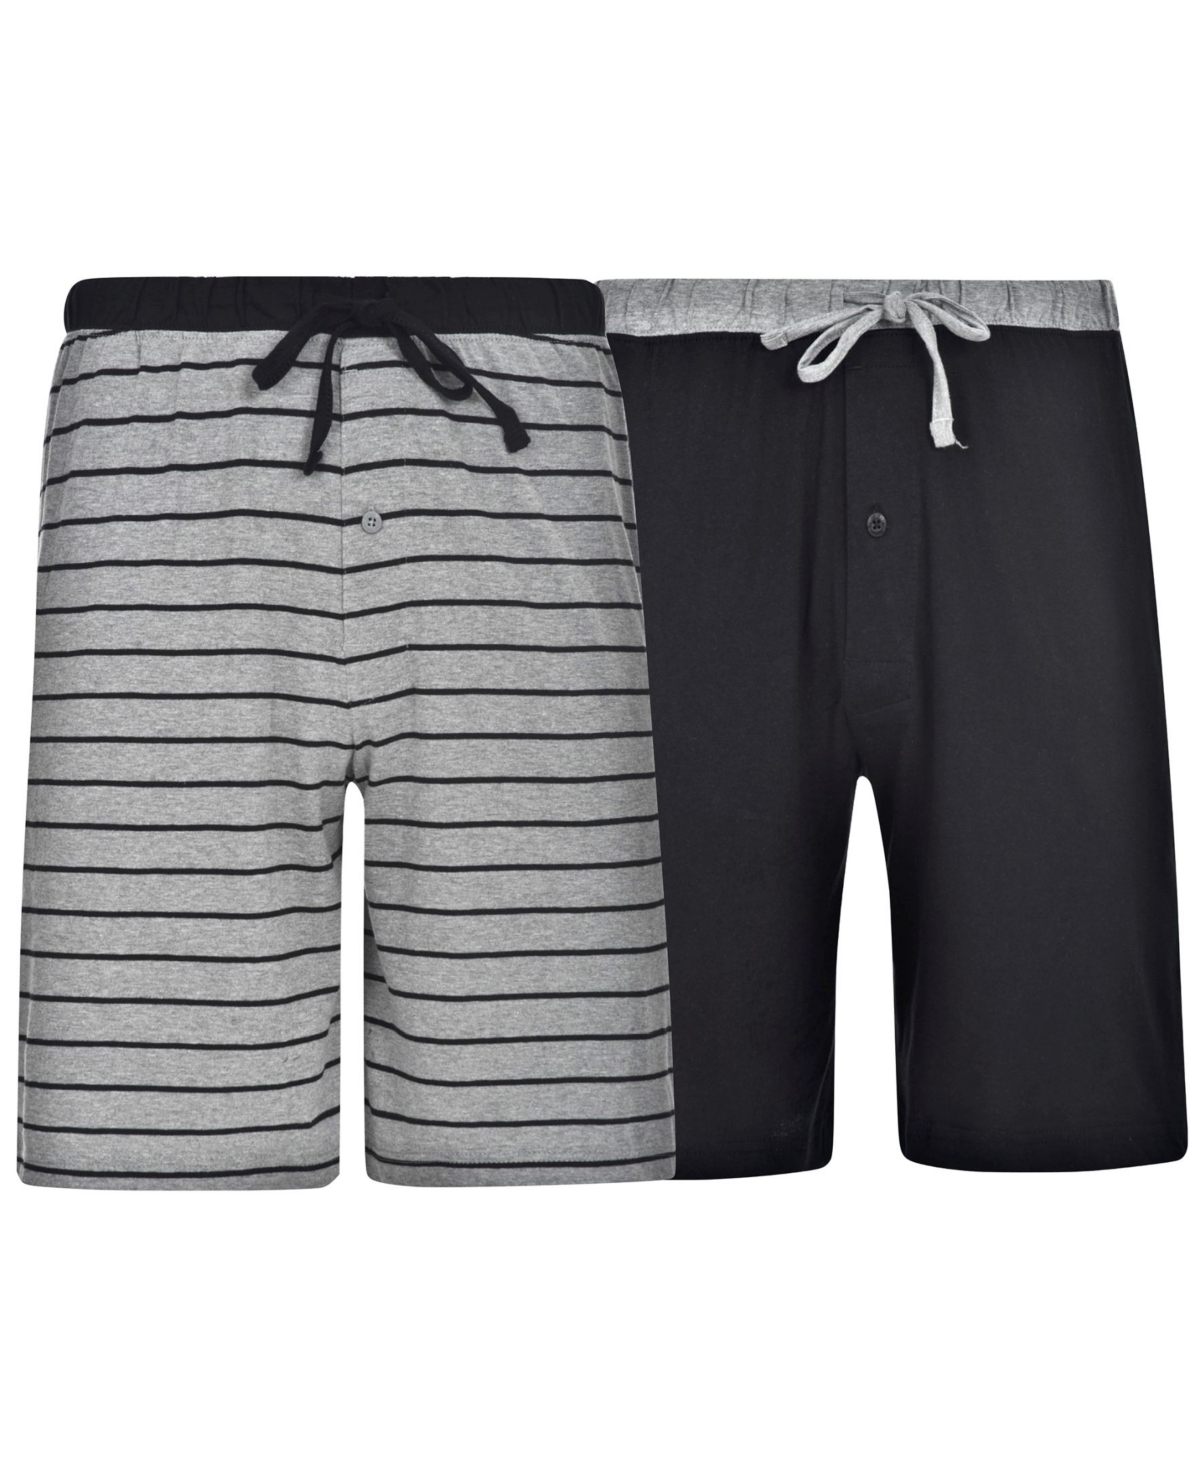 Men's Knit Jam Shorts, Pack of 2 - Black, Gray